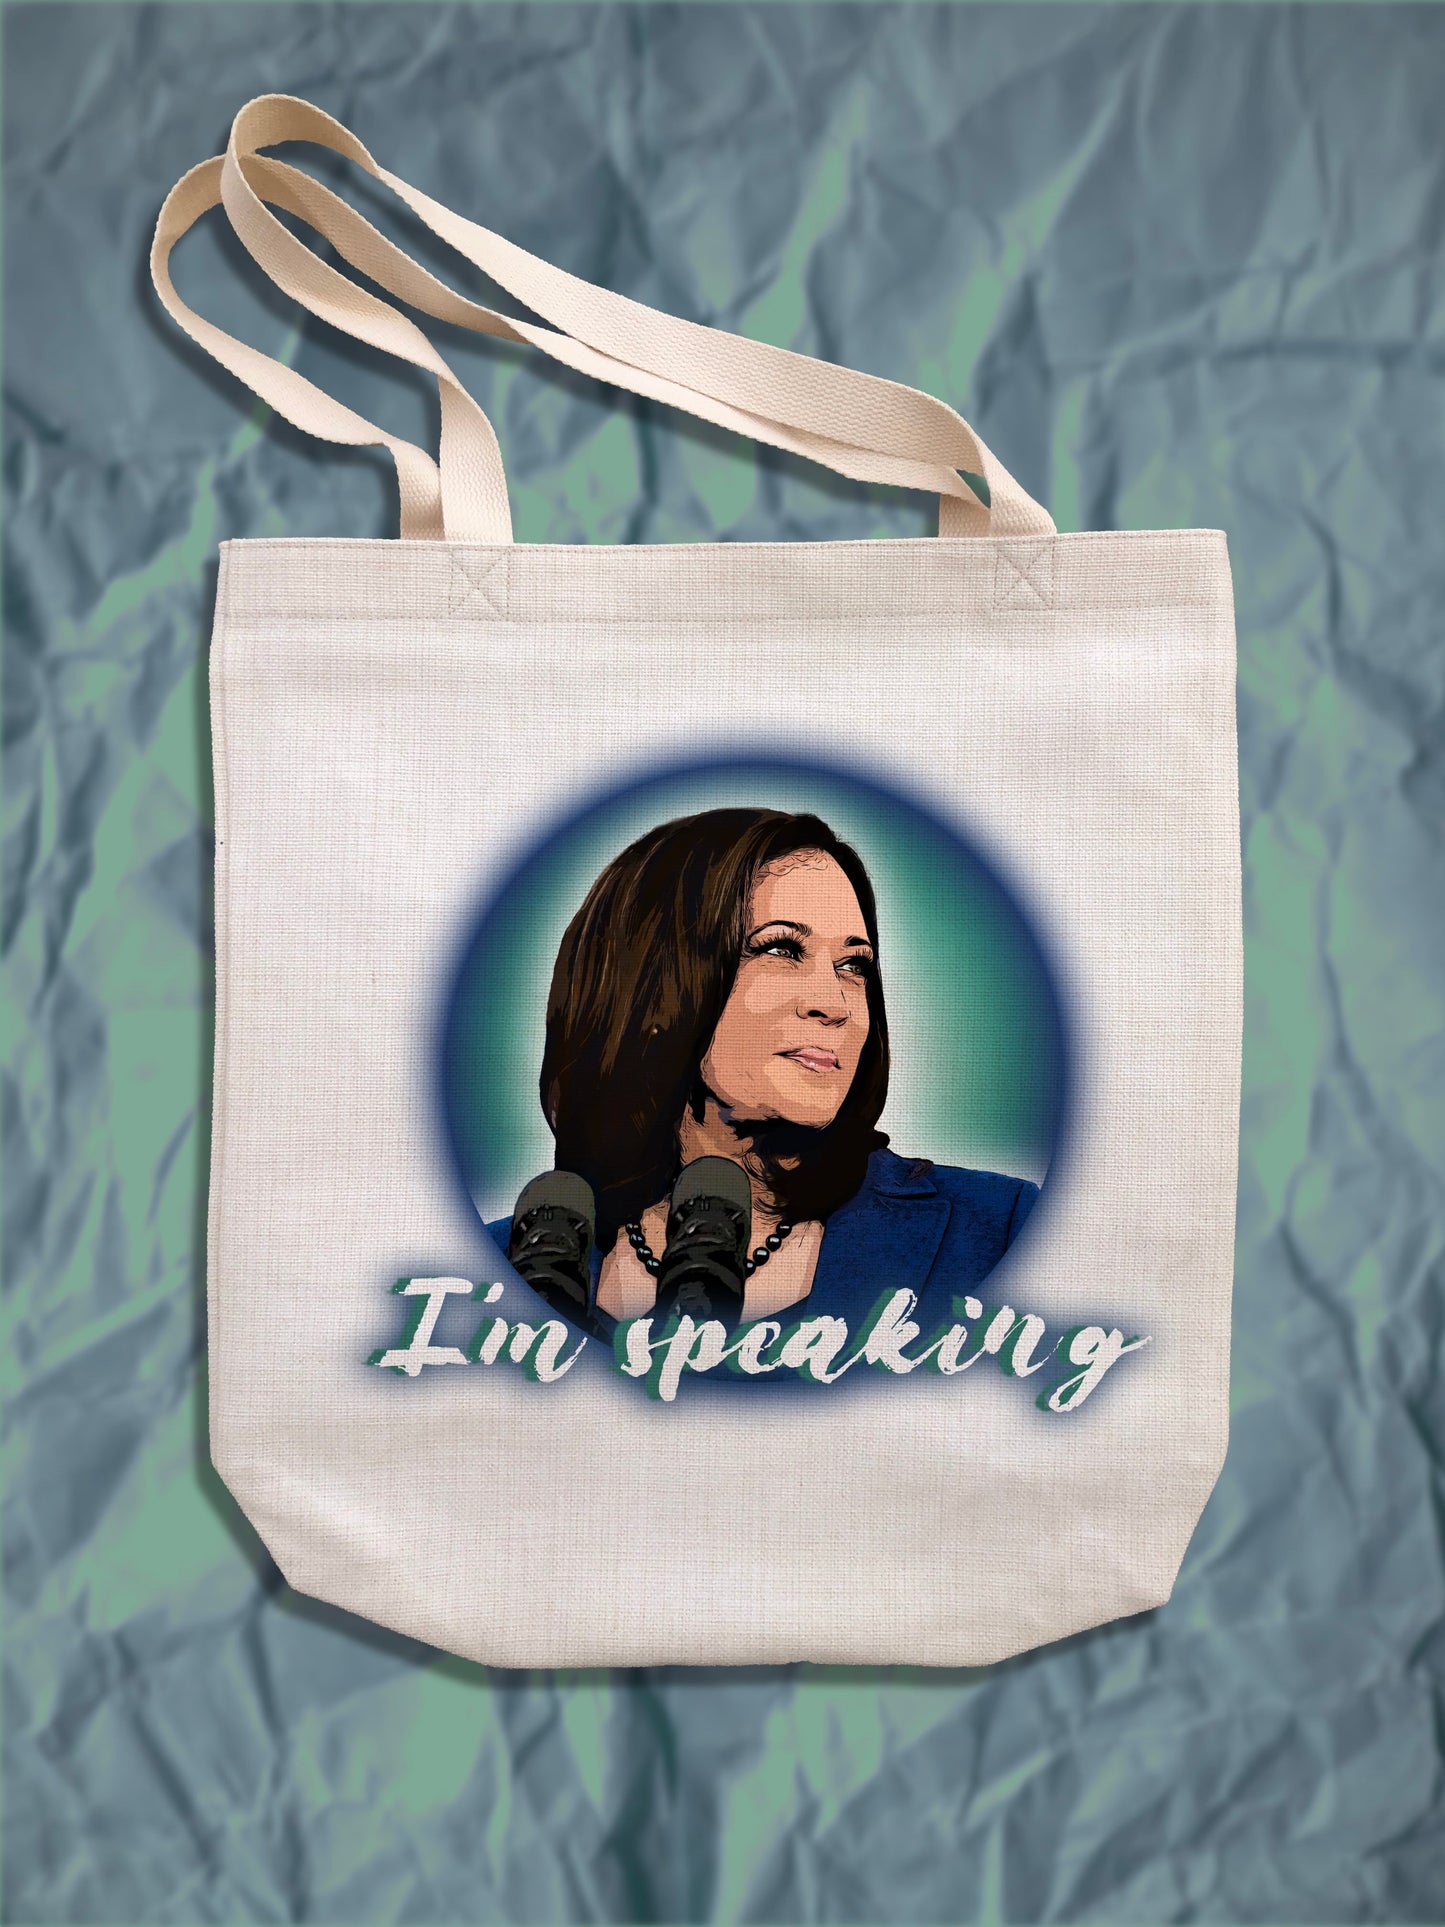 Kamala Harris "I'm Speaking" Tote Bag